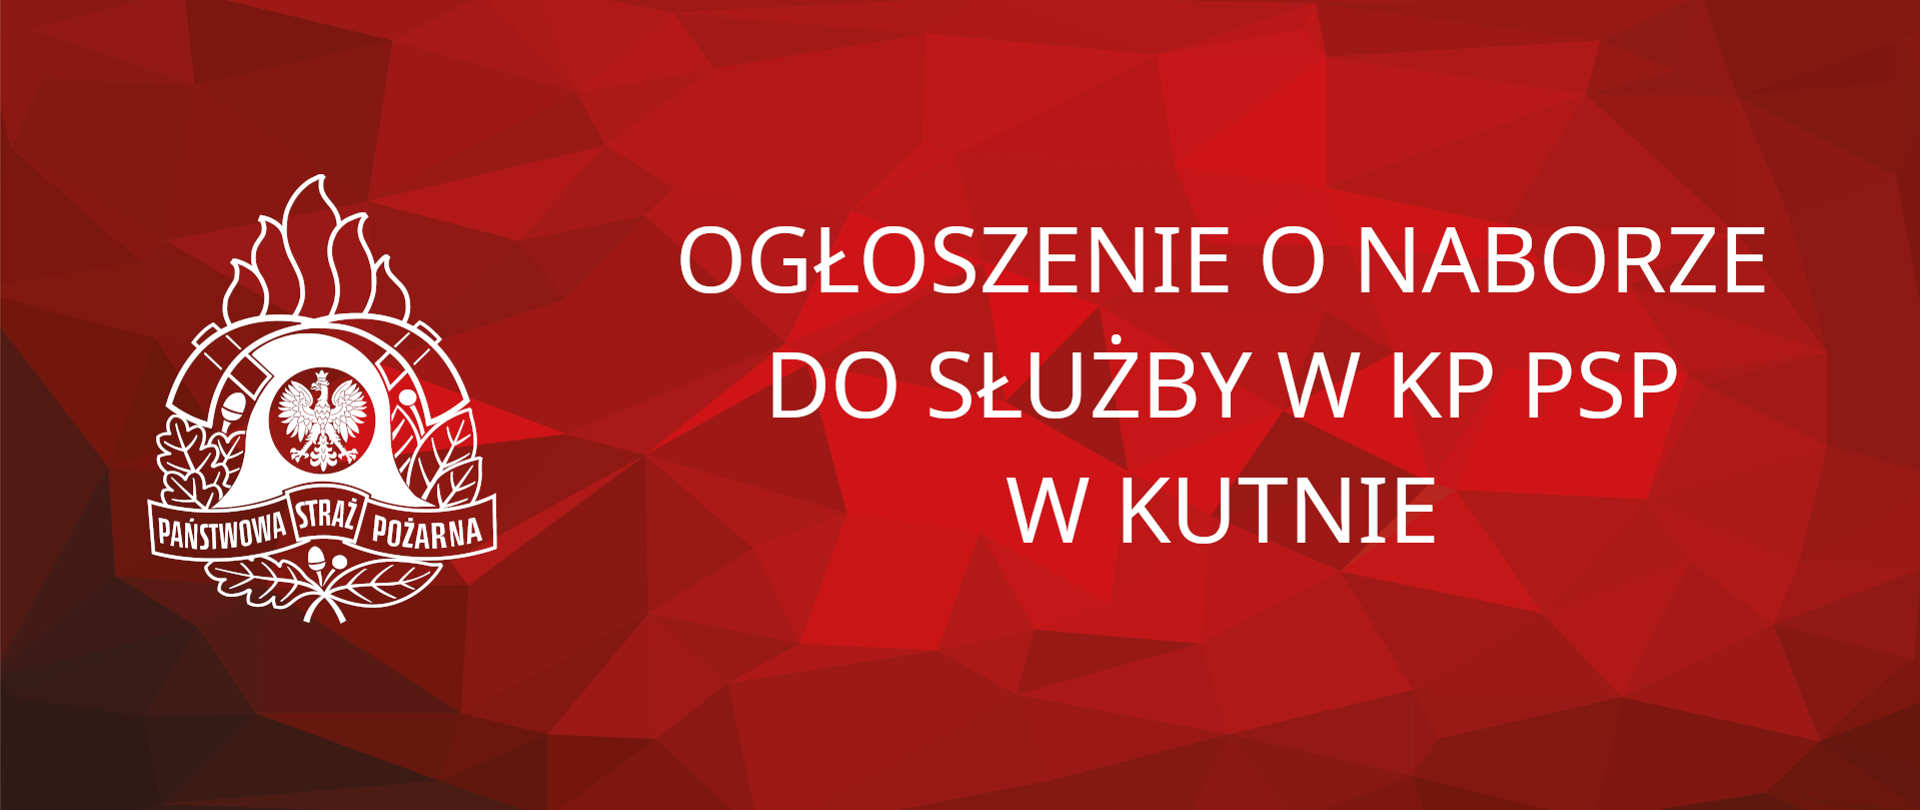 Grafika na czerwonym tle z logiem PSP a na niej napis "Ogłoszenie o naborze do służby w KP PSP w Kutnie"